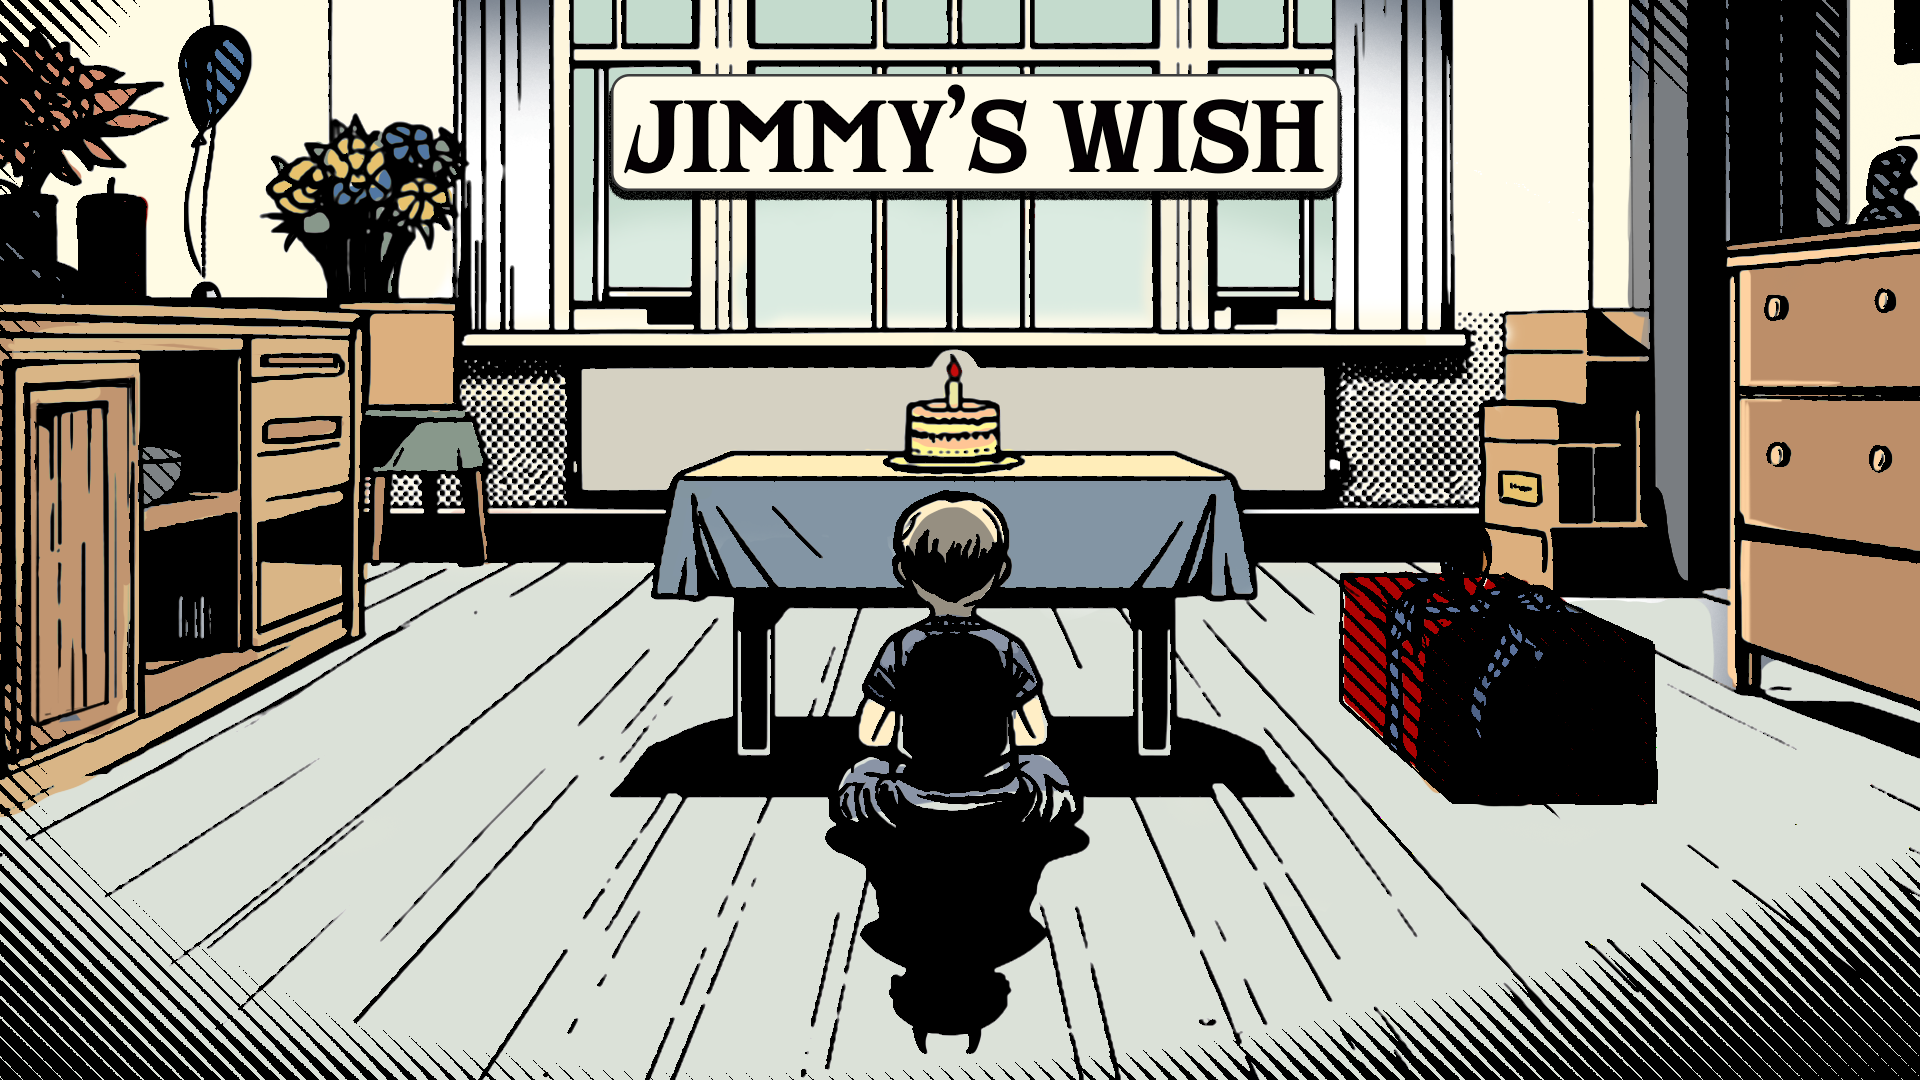  Jimmy's Wish